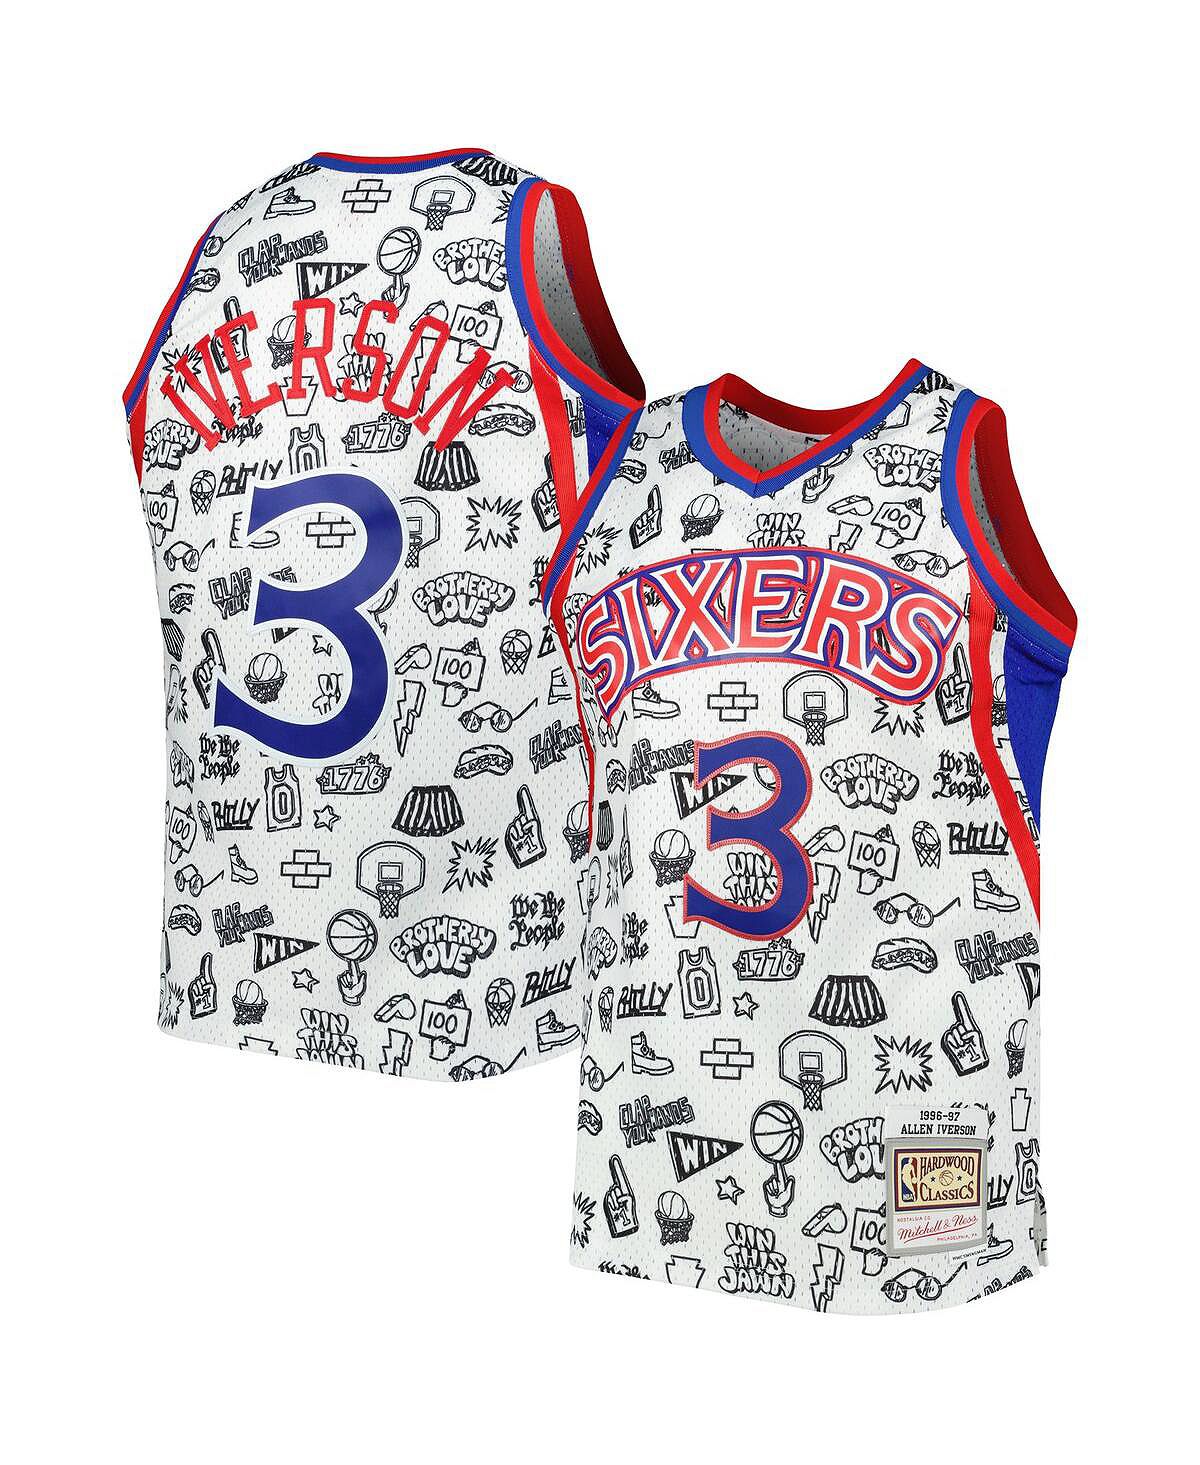 Мужская футболка allen iverson white philadelphia 76ers 1996-97 hardwood classics doodle swingman jersey Mitchell & Ness, белый